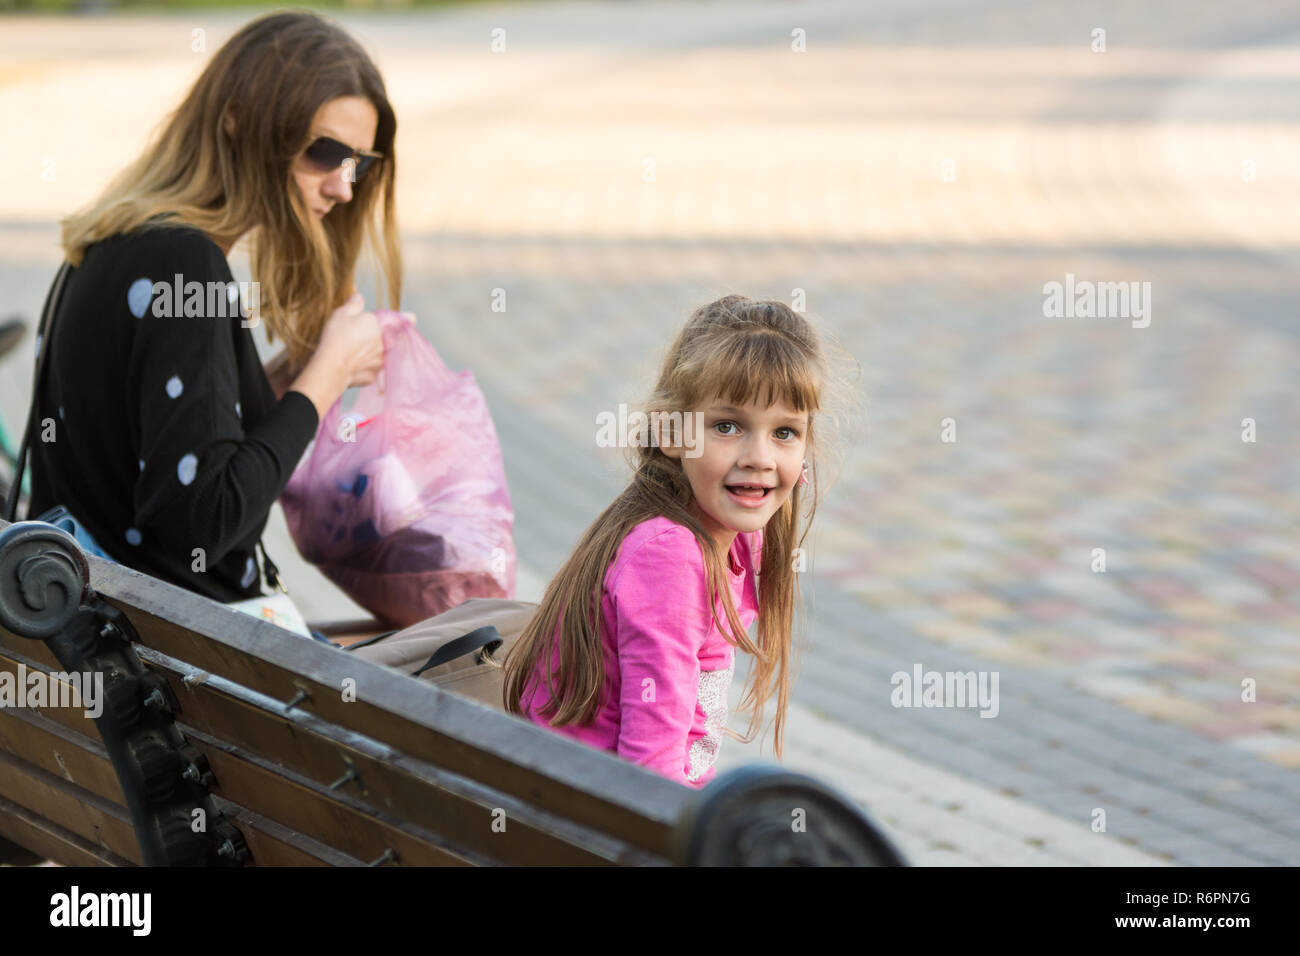 6-jähriges Mädchen und Mutter saß auf einer Bank für einen Spaziergang, das Mädchen sah mit Freude am Rahmen Stockfoto